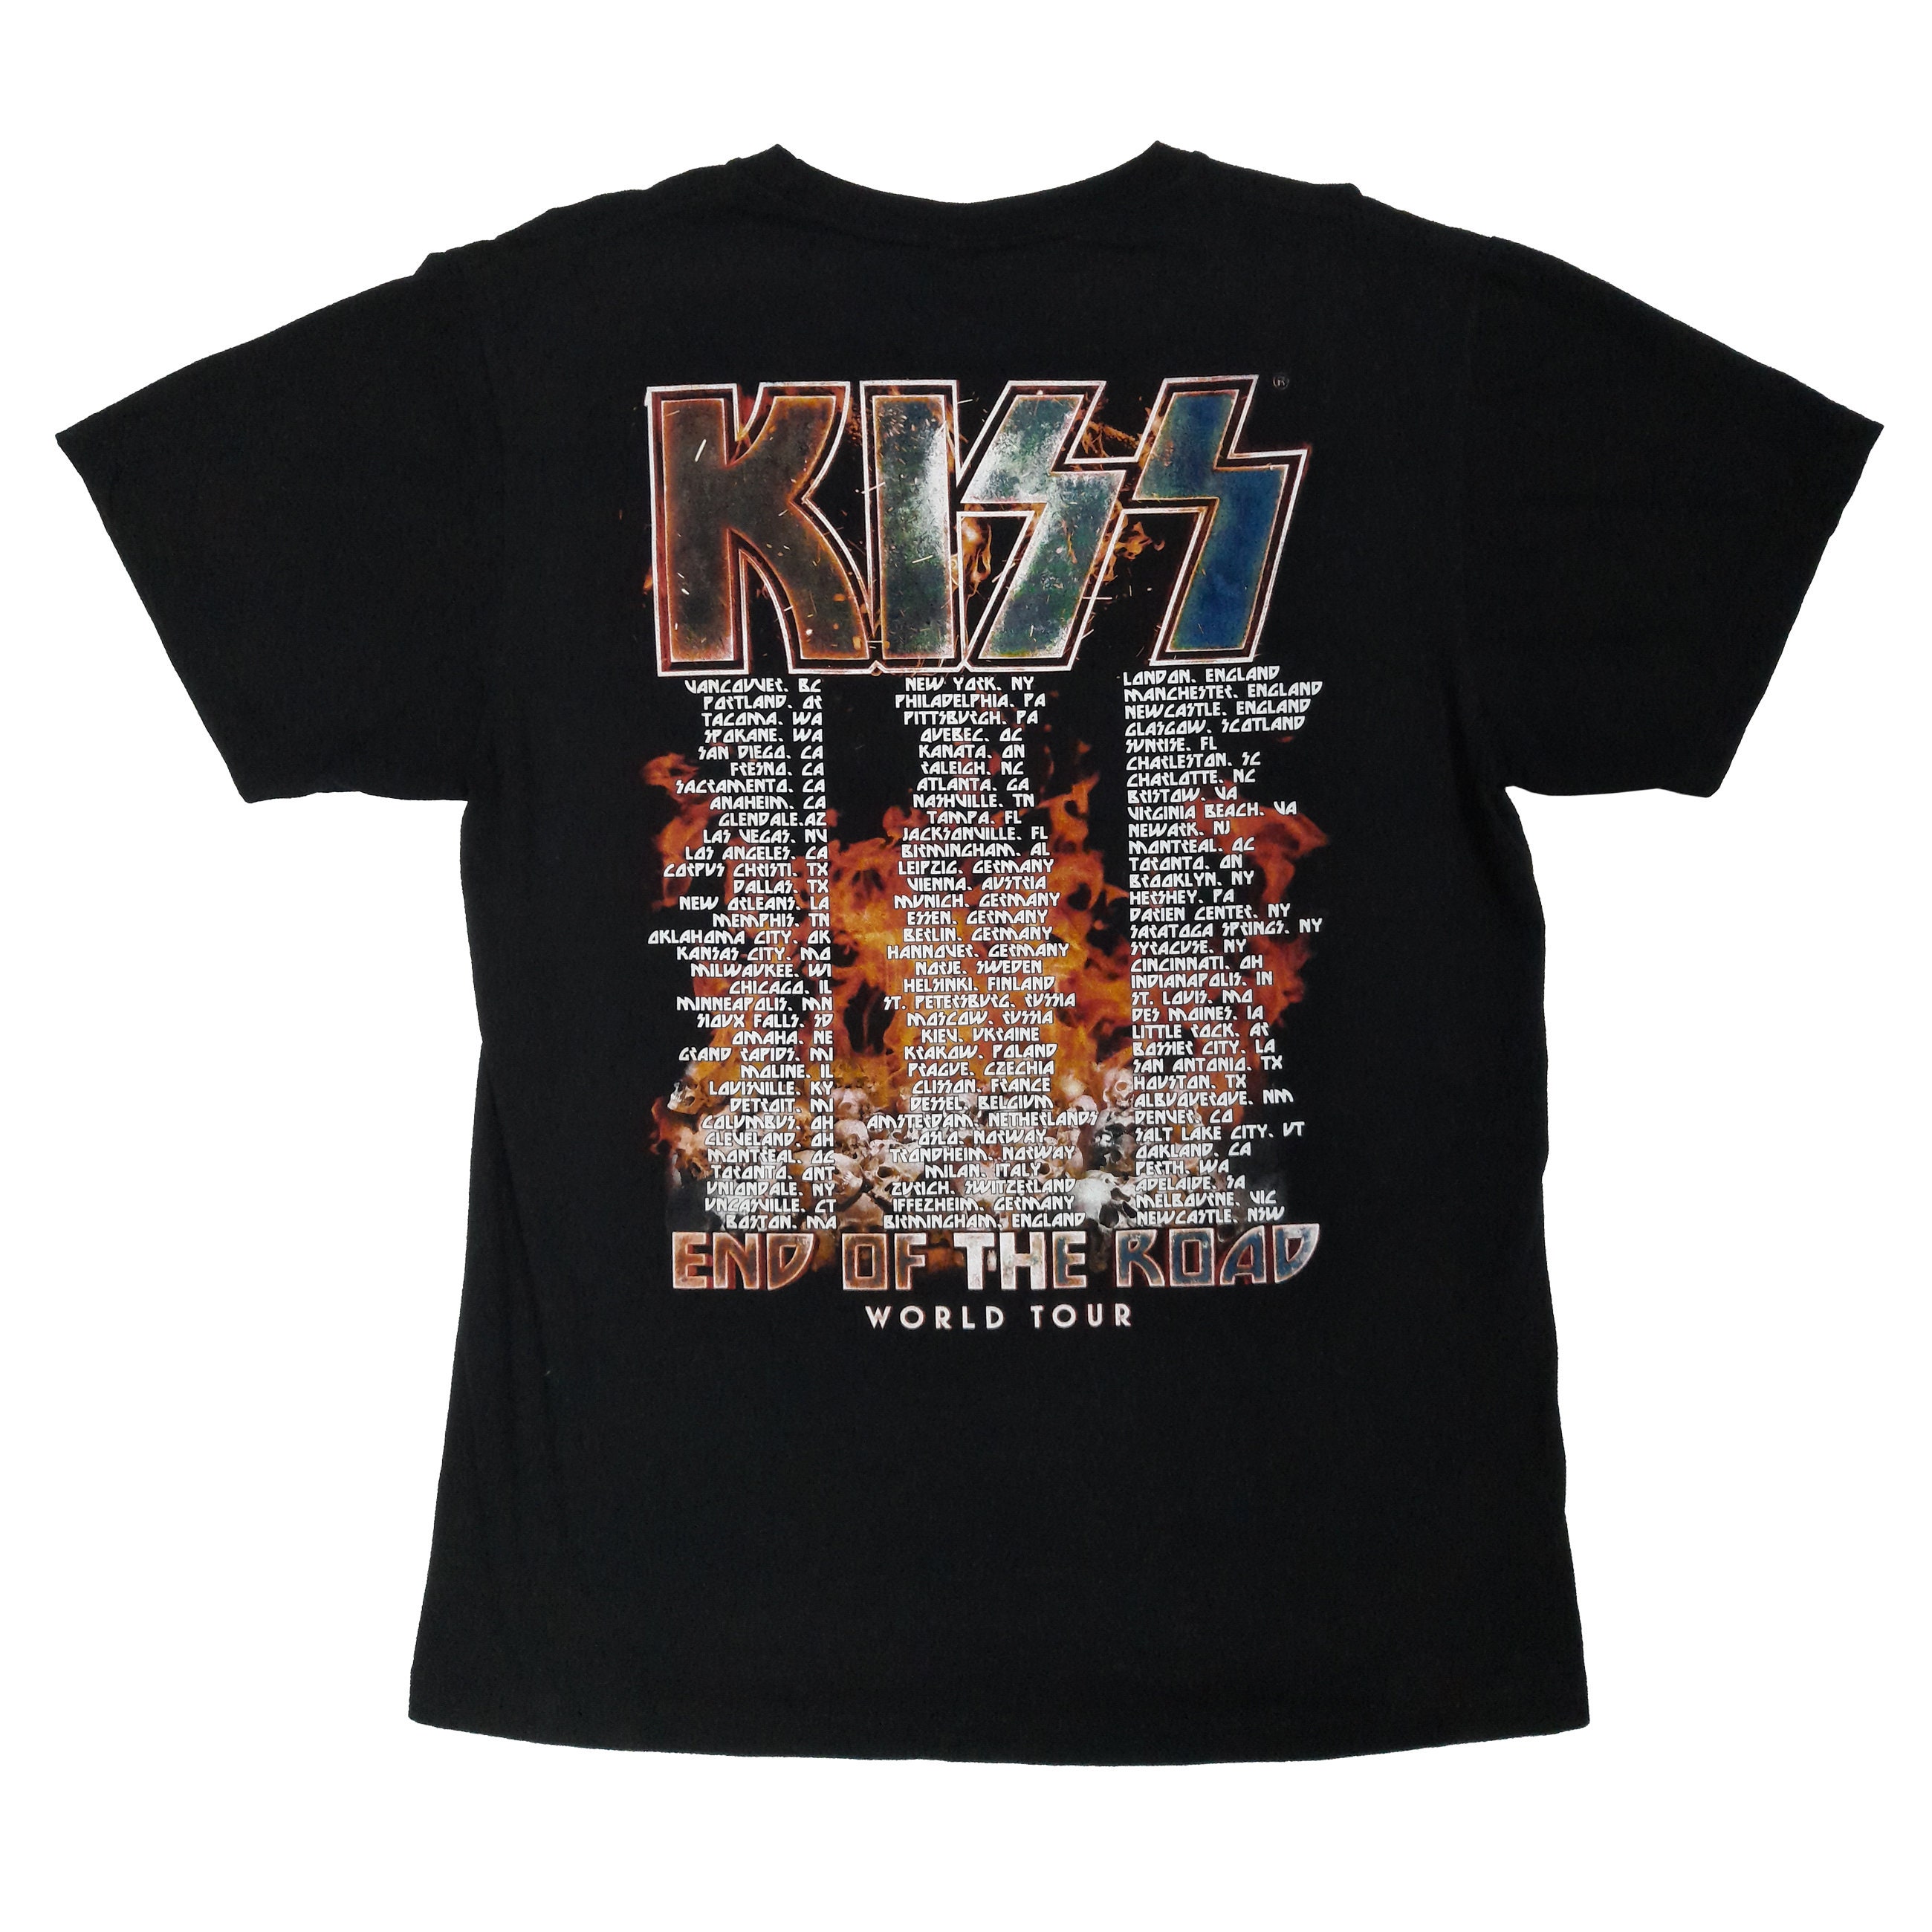 Kleding Gender-neutrale kleding volwassenen Tops & T-shirts T-shirts Authentiek Vintage KISS Tour T-shirt 1986 